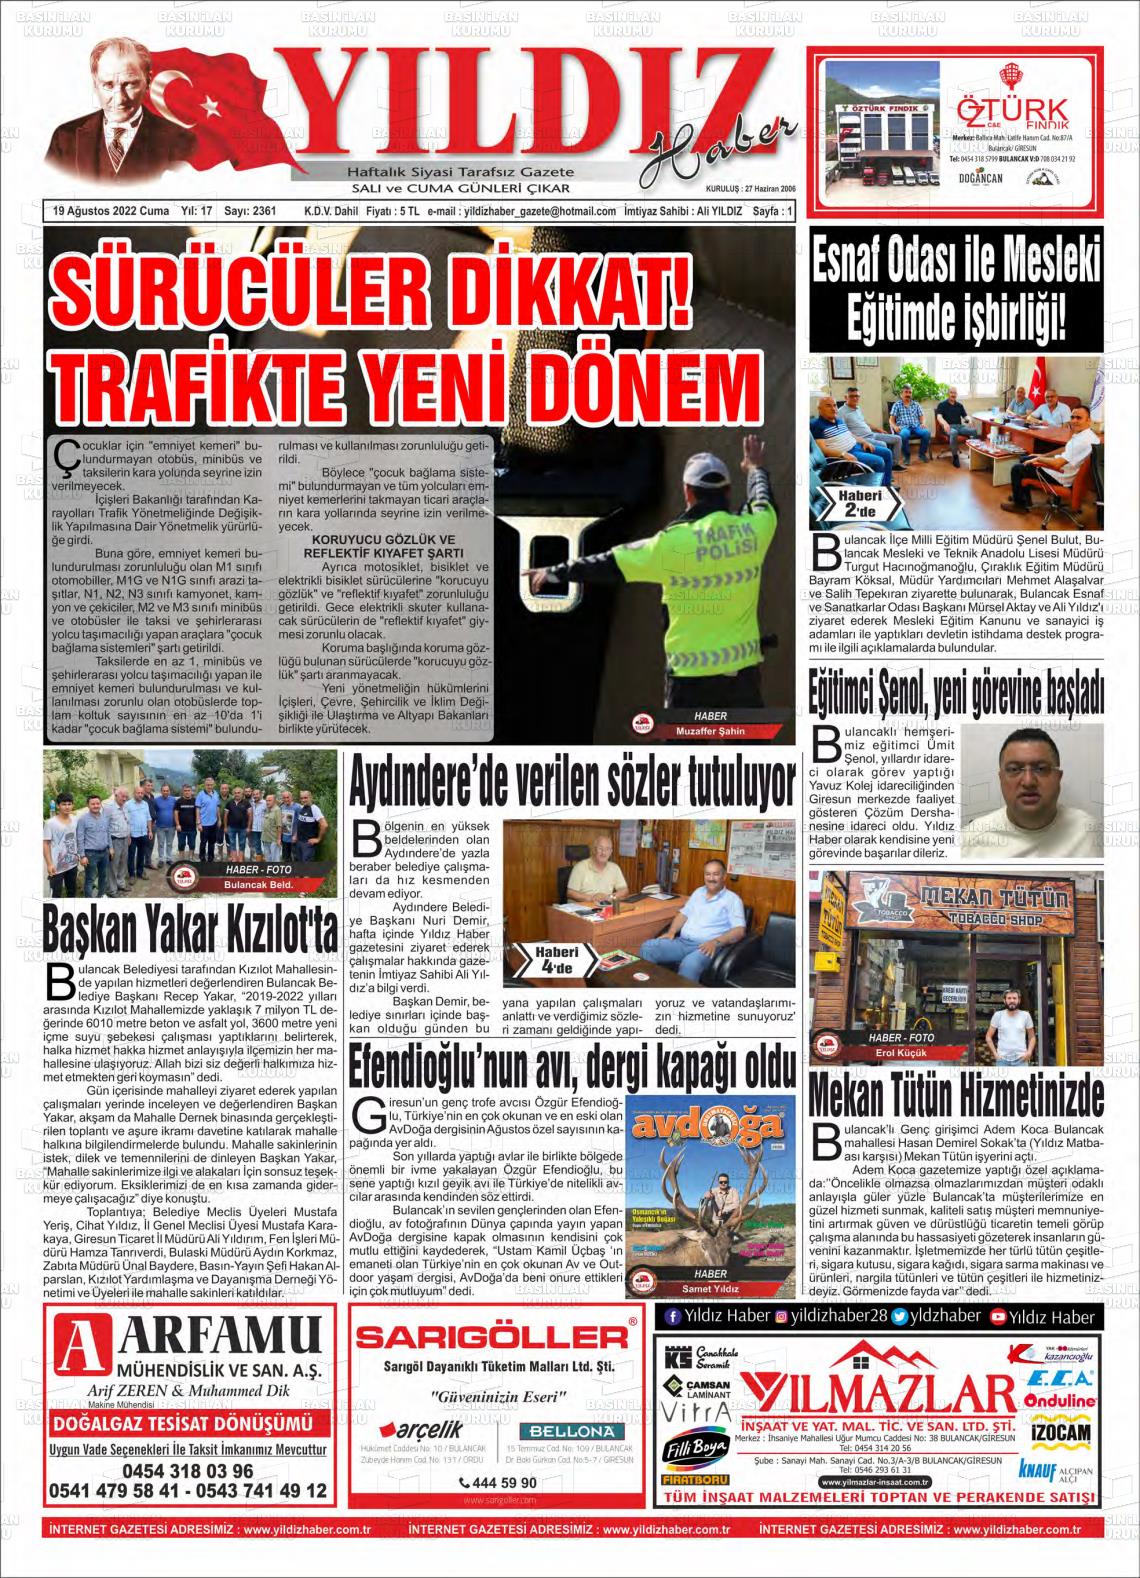 19 Ağustos 2022 Yıldız Haber Gazete Manşeti